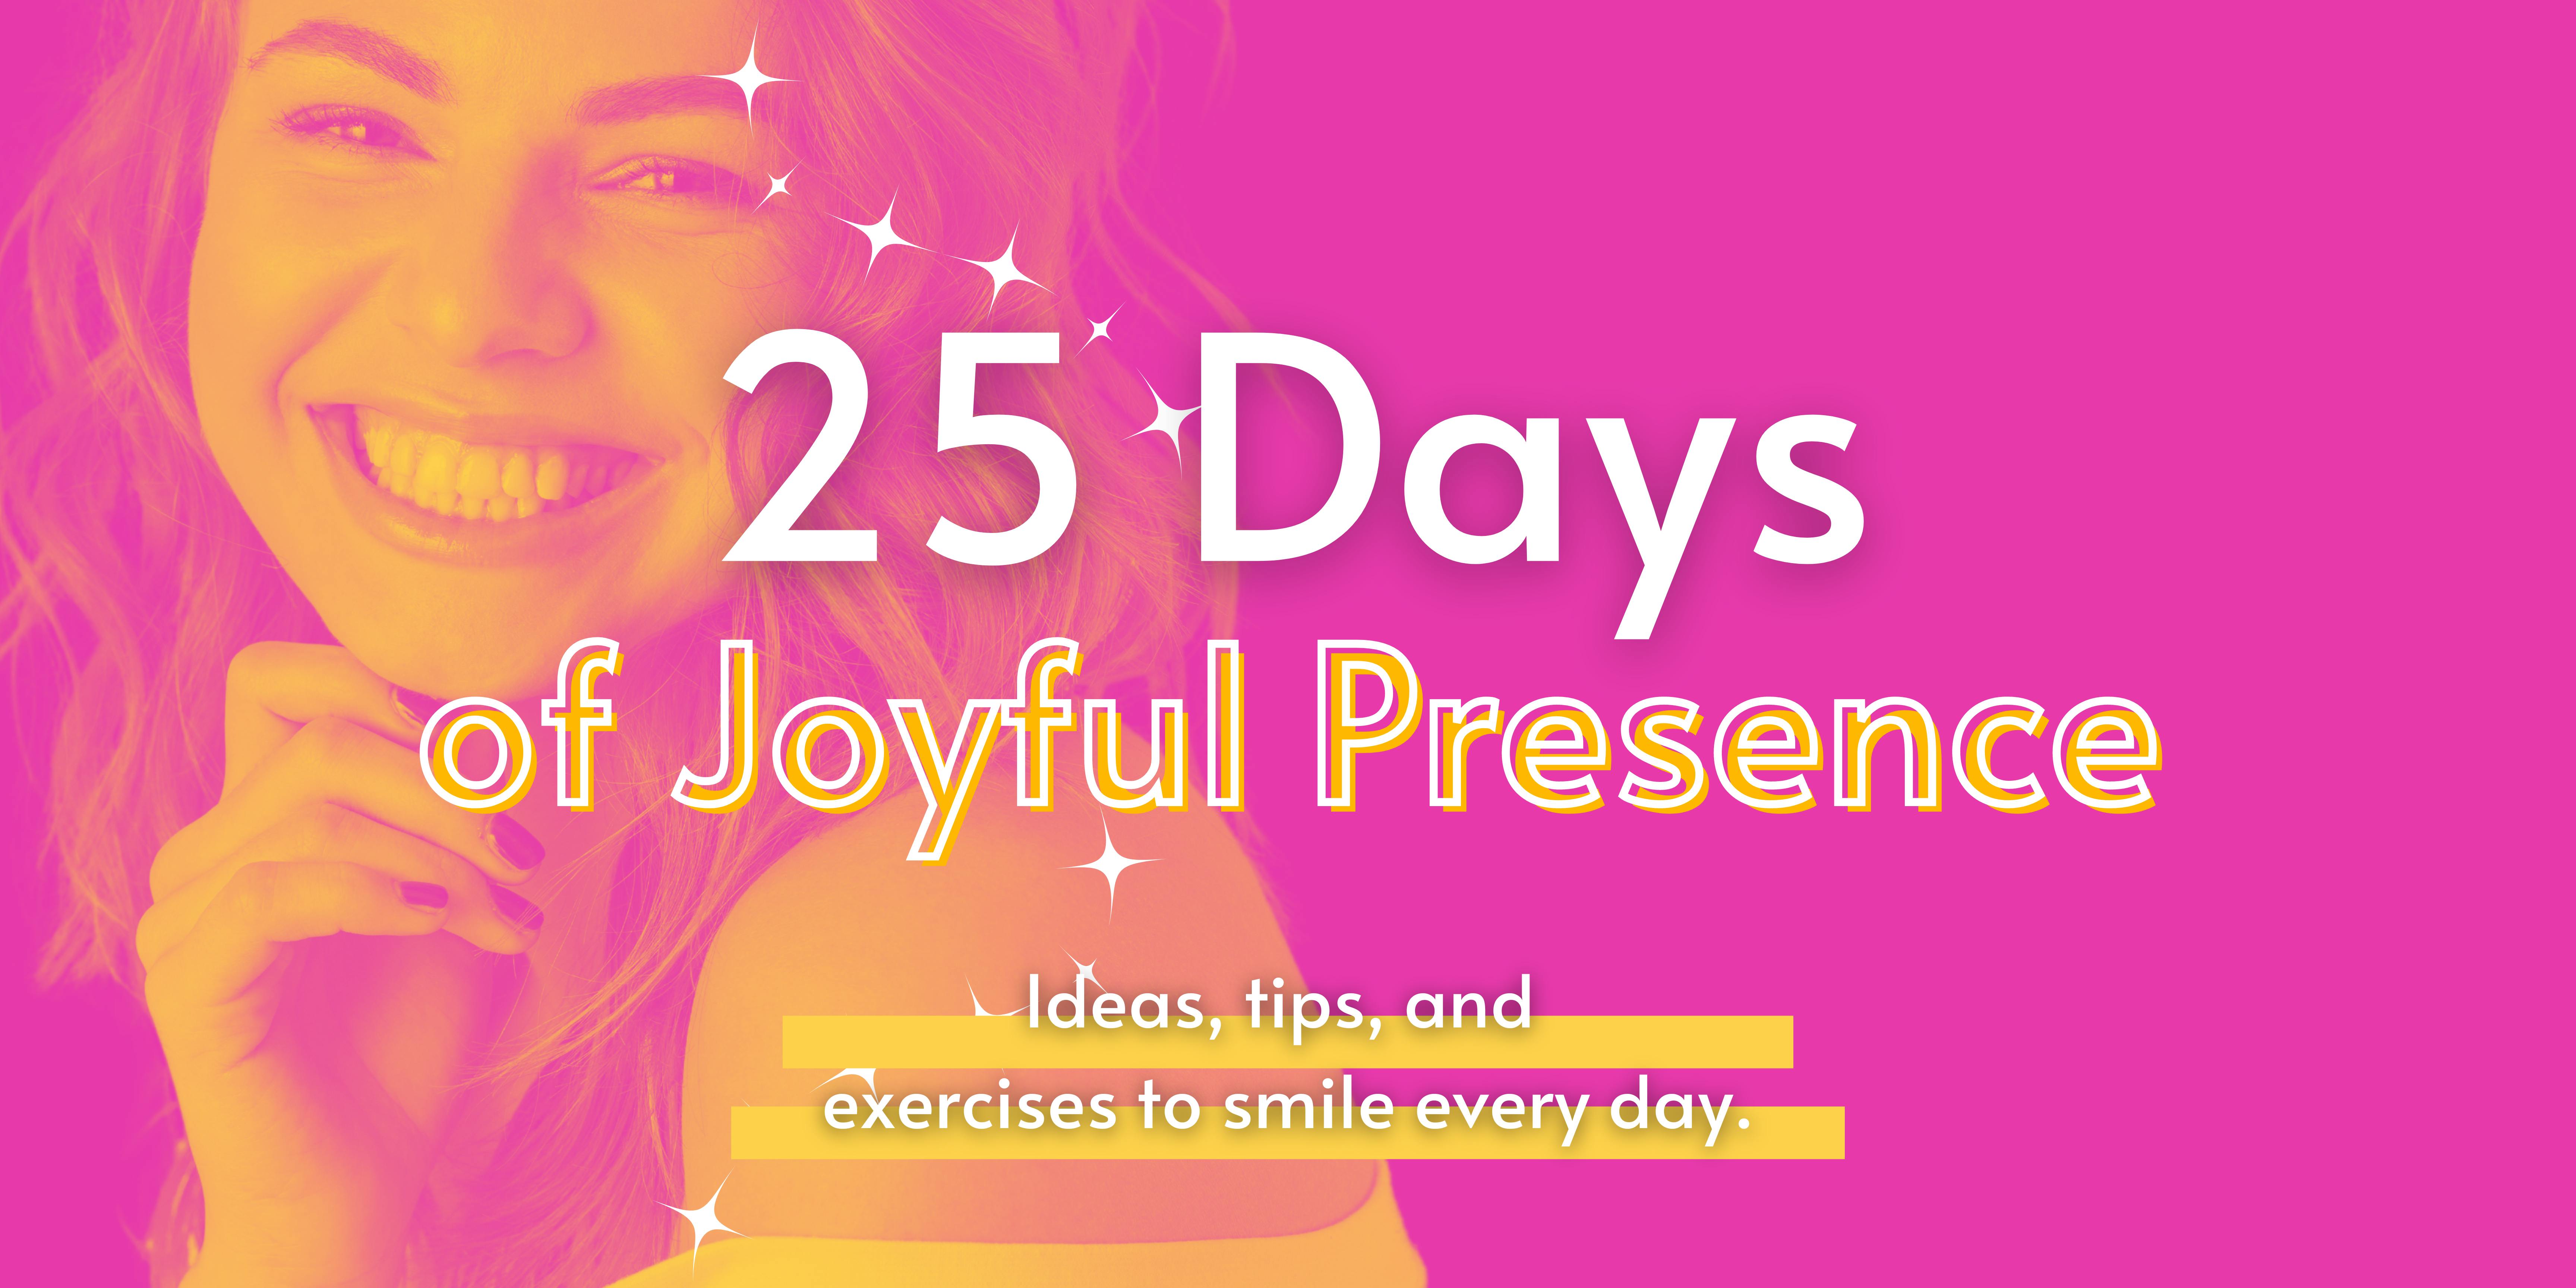 25 Days of Joyful Presence